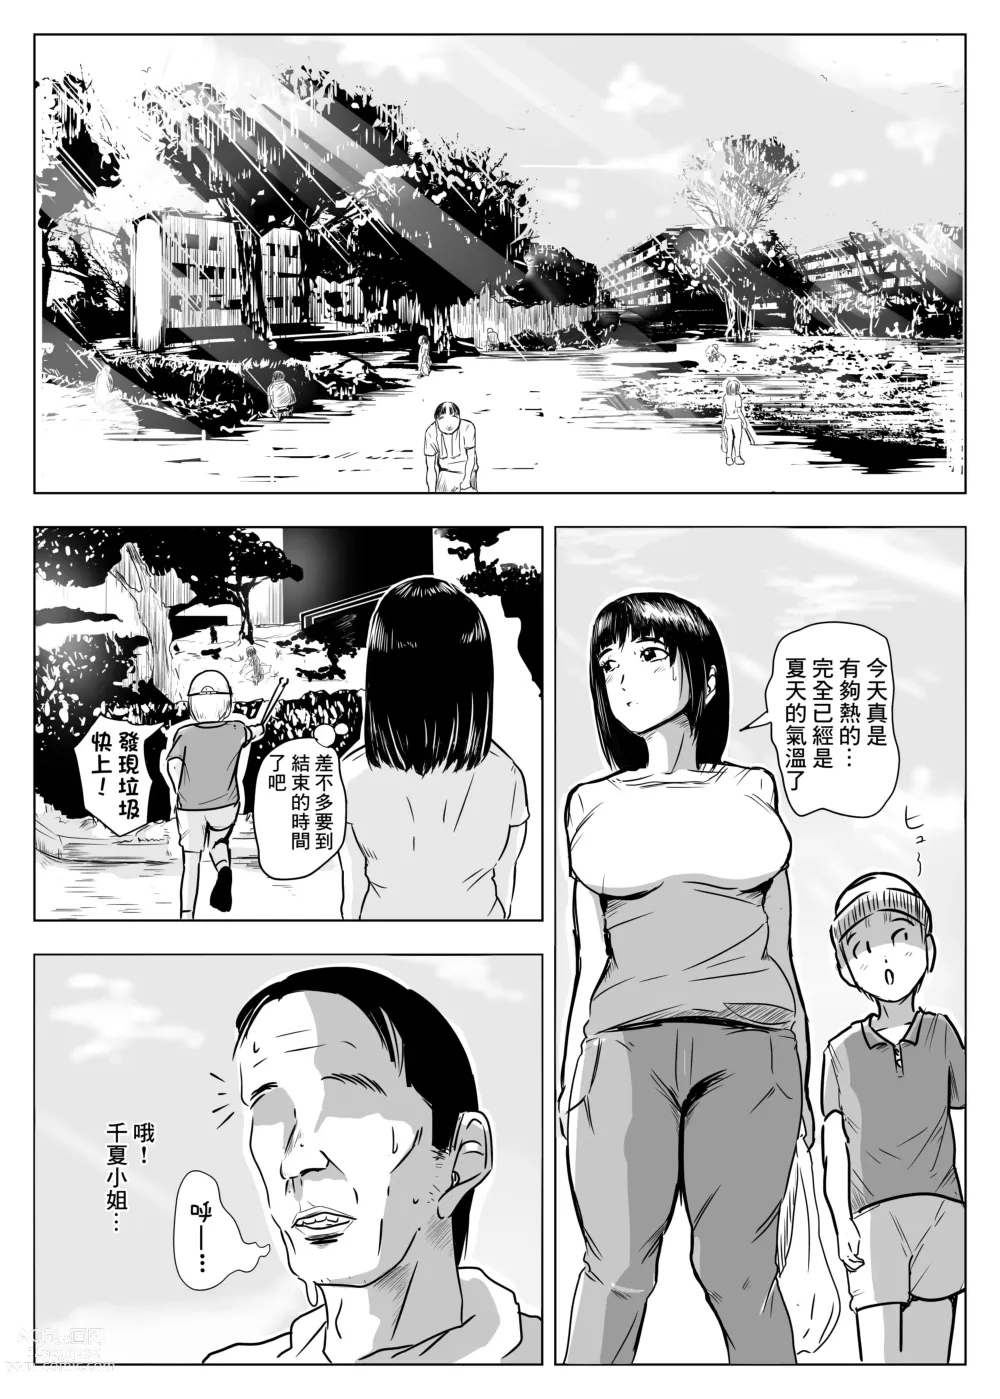 Page 3 of doujinshi NOSTALGIC